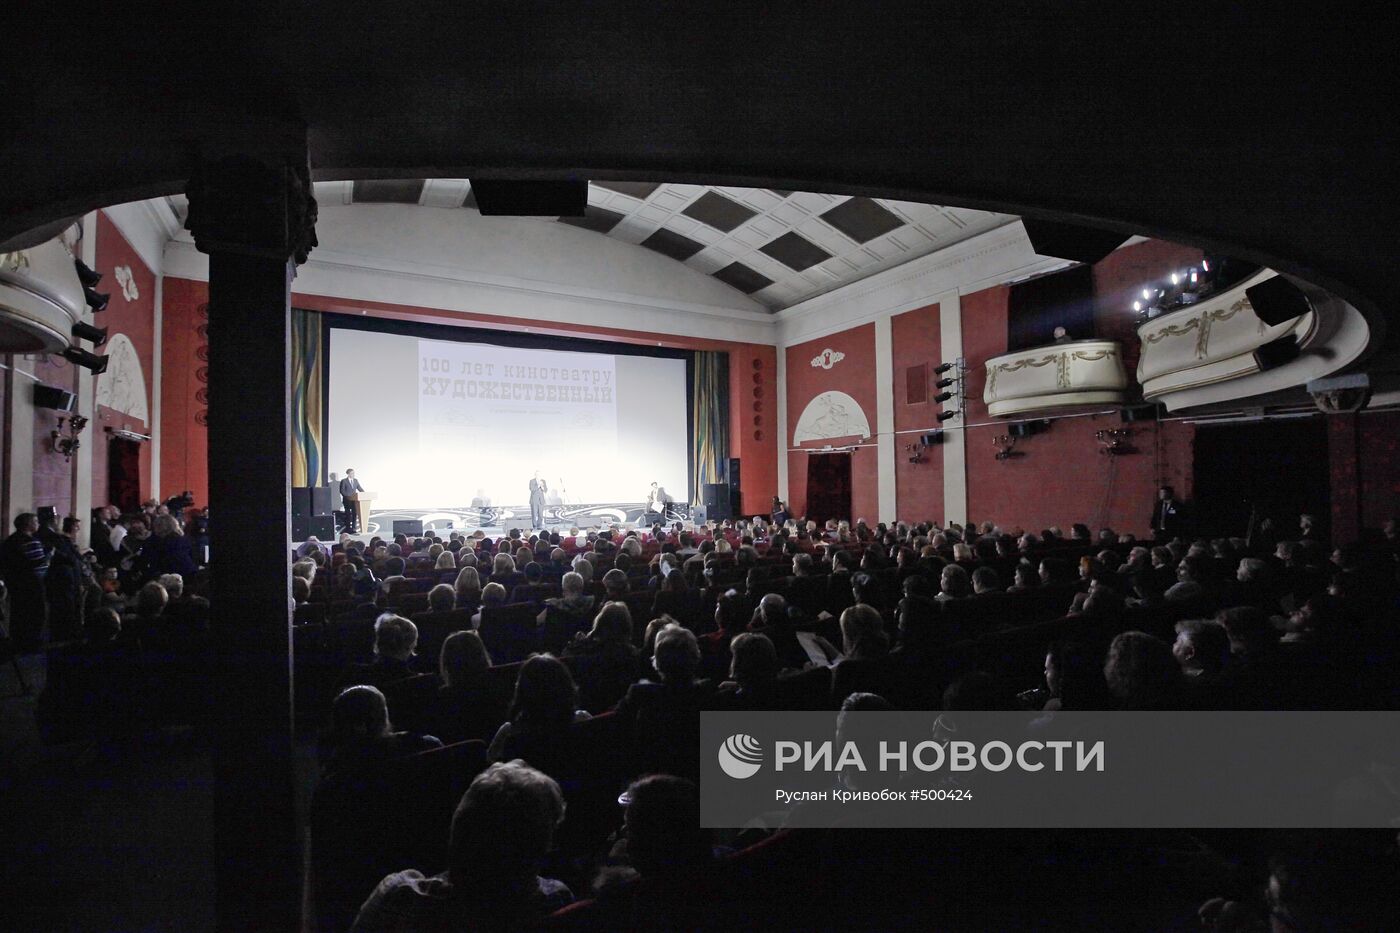 100-летие кинотеатра "Художественный" в Москве